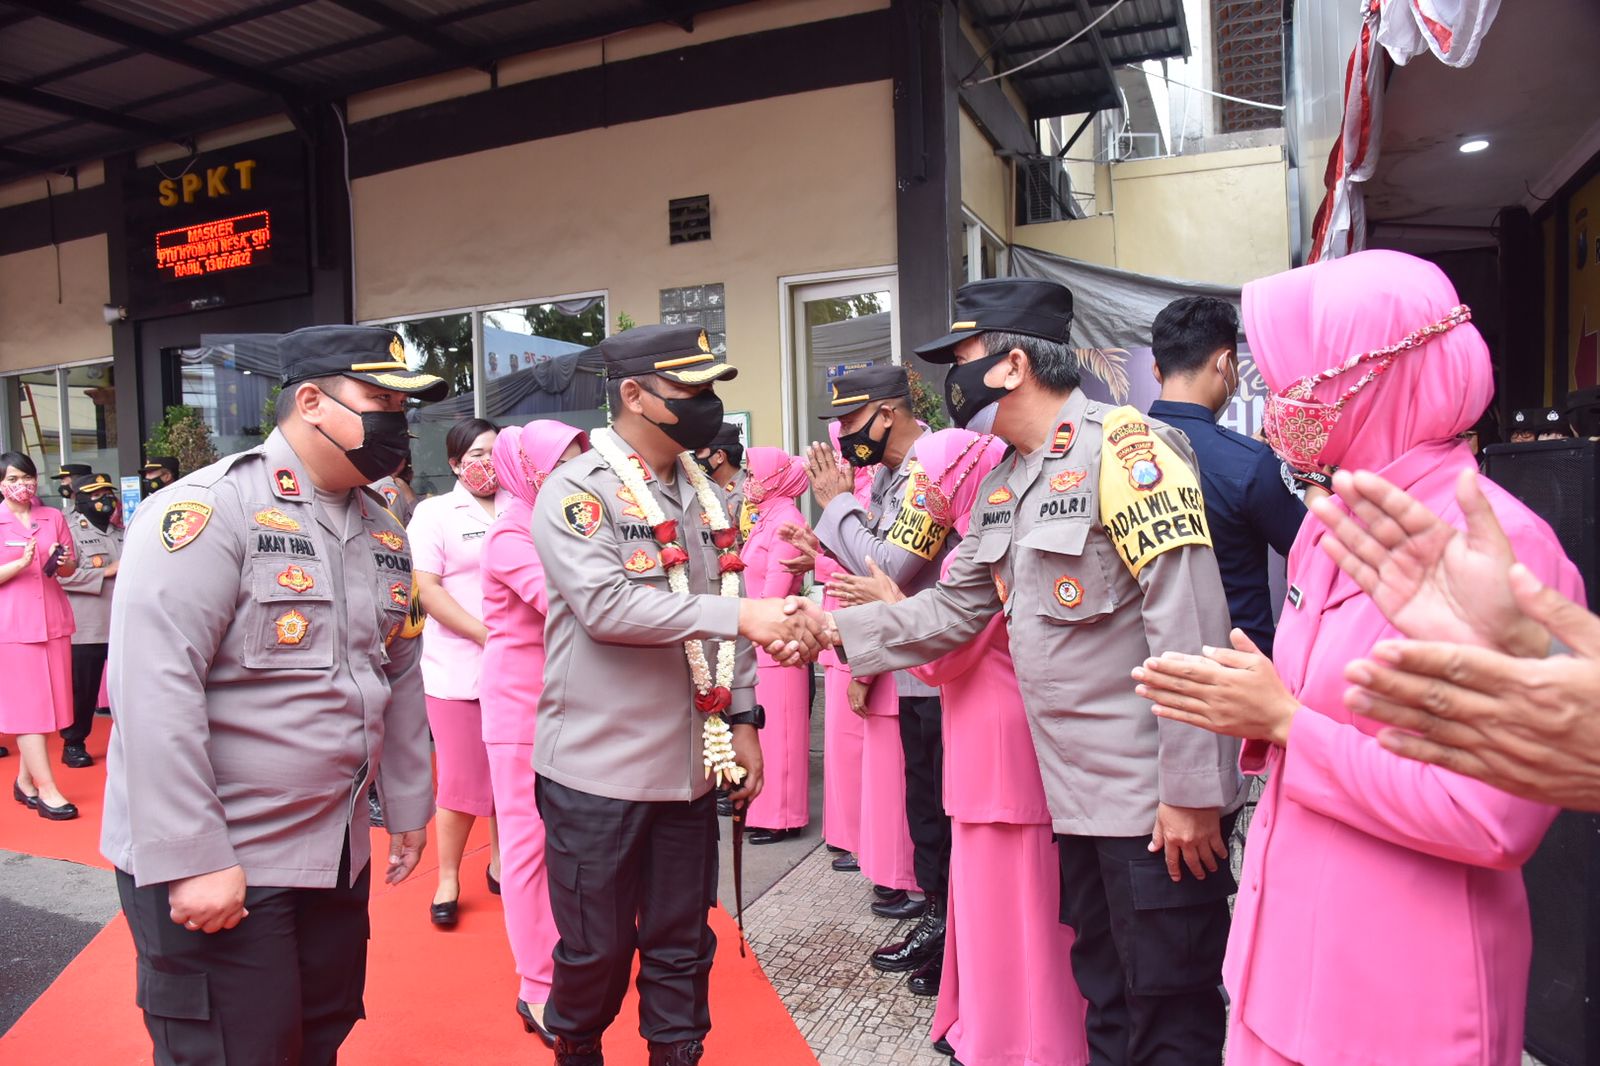 TNI-Polri Olahraga Bersama, Kapolres Lamongan: Perkuat Sinergi dan Soliditas